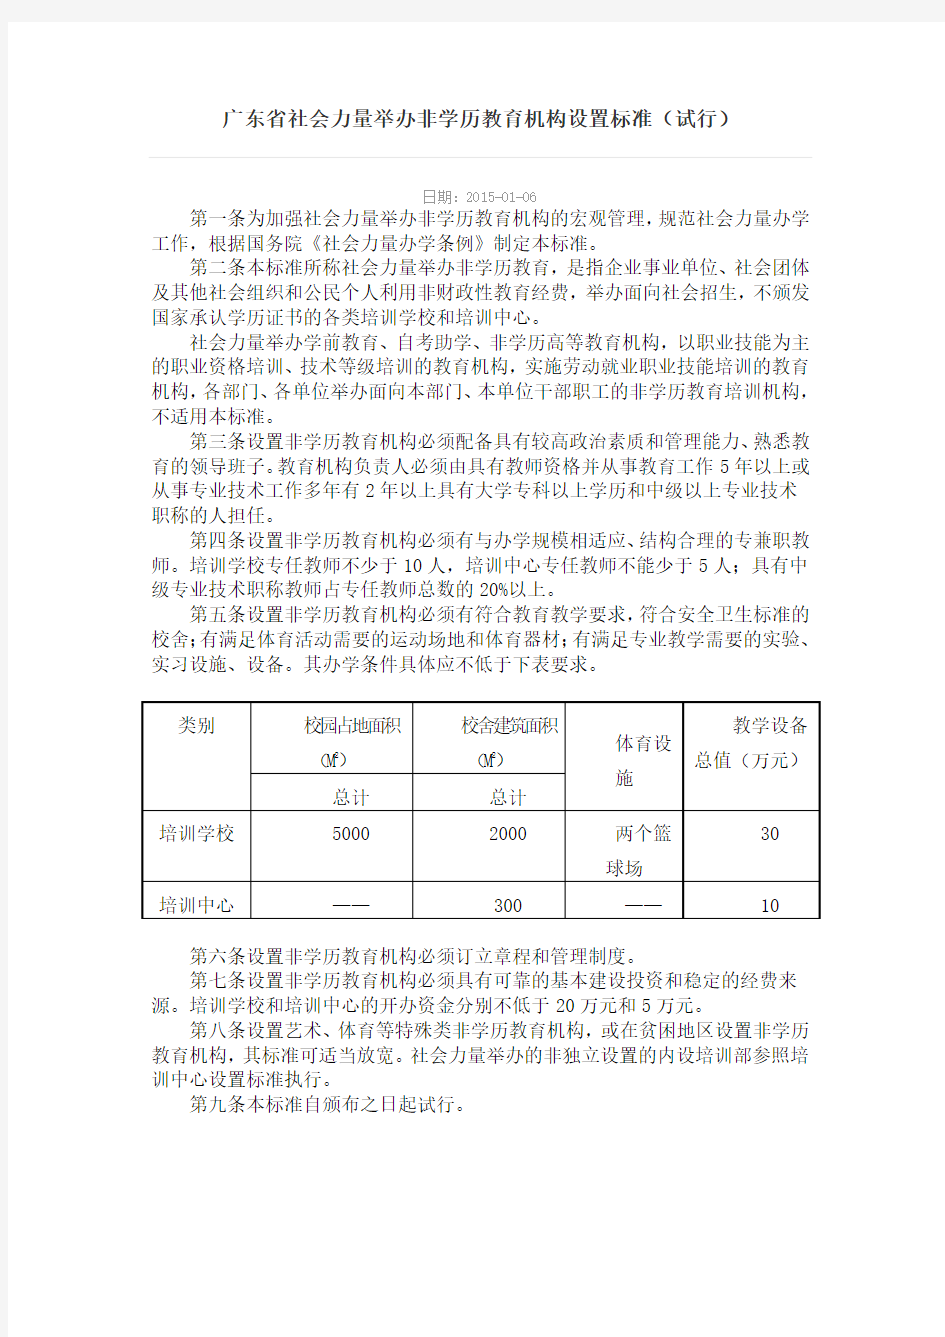 广东省社会力量举办非学历教育机构设置标准(试行)